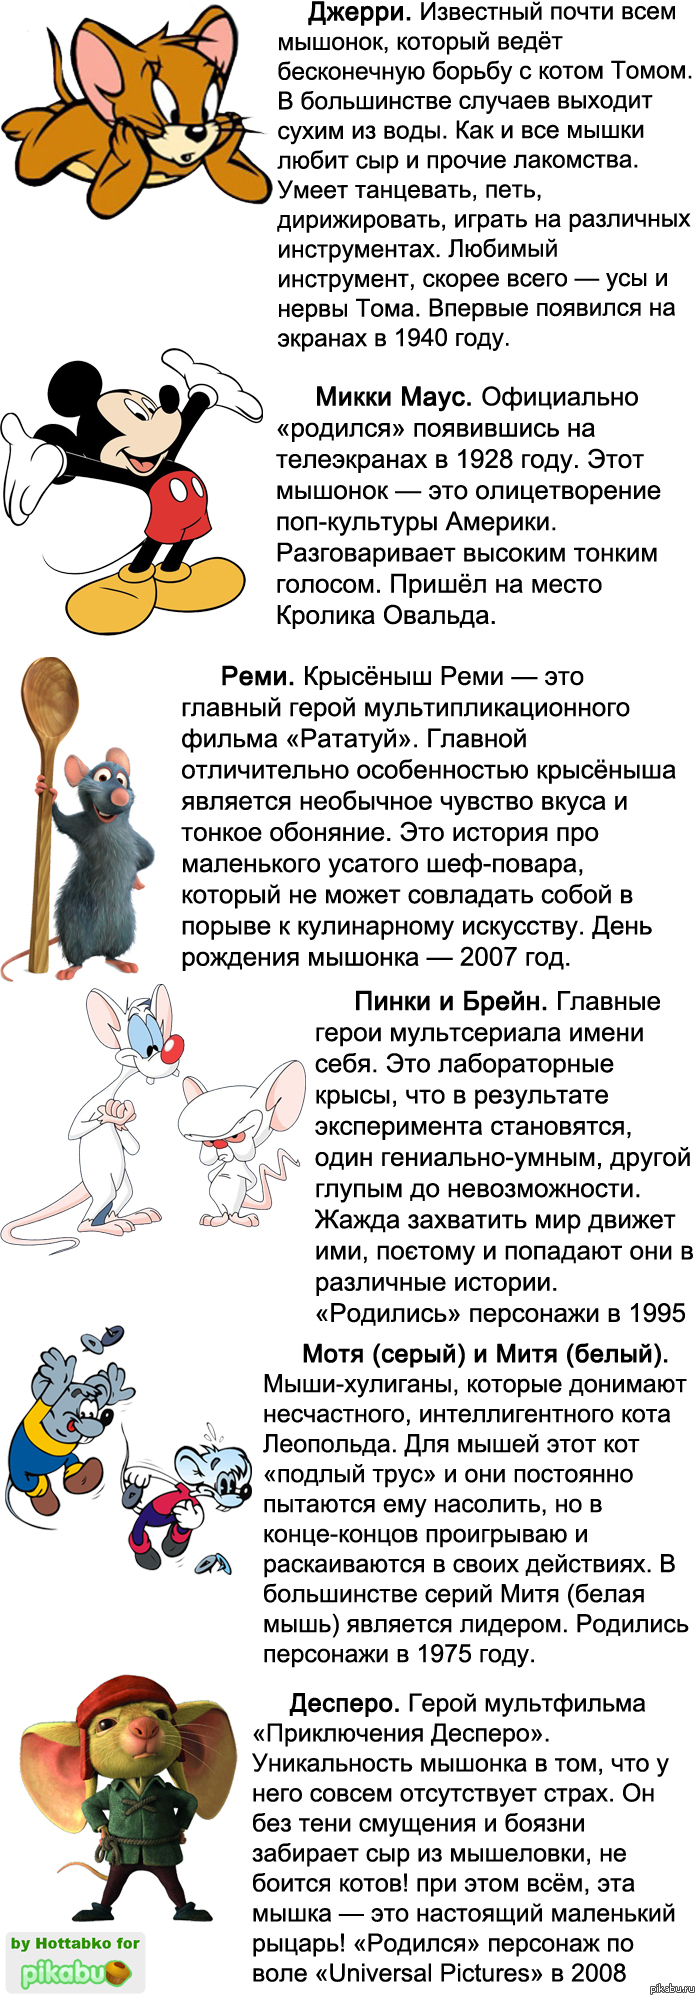 Мыши из Леопольда Митя и Мотя